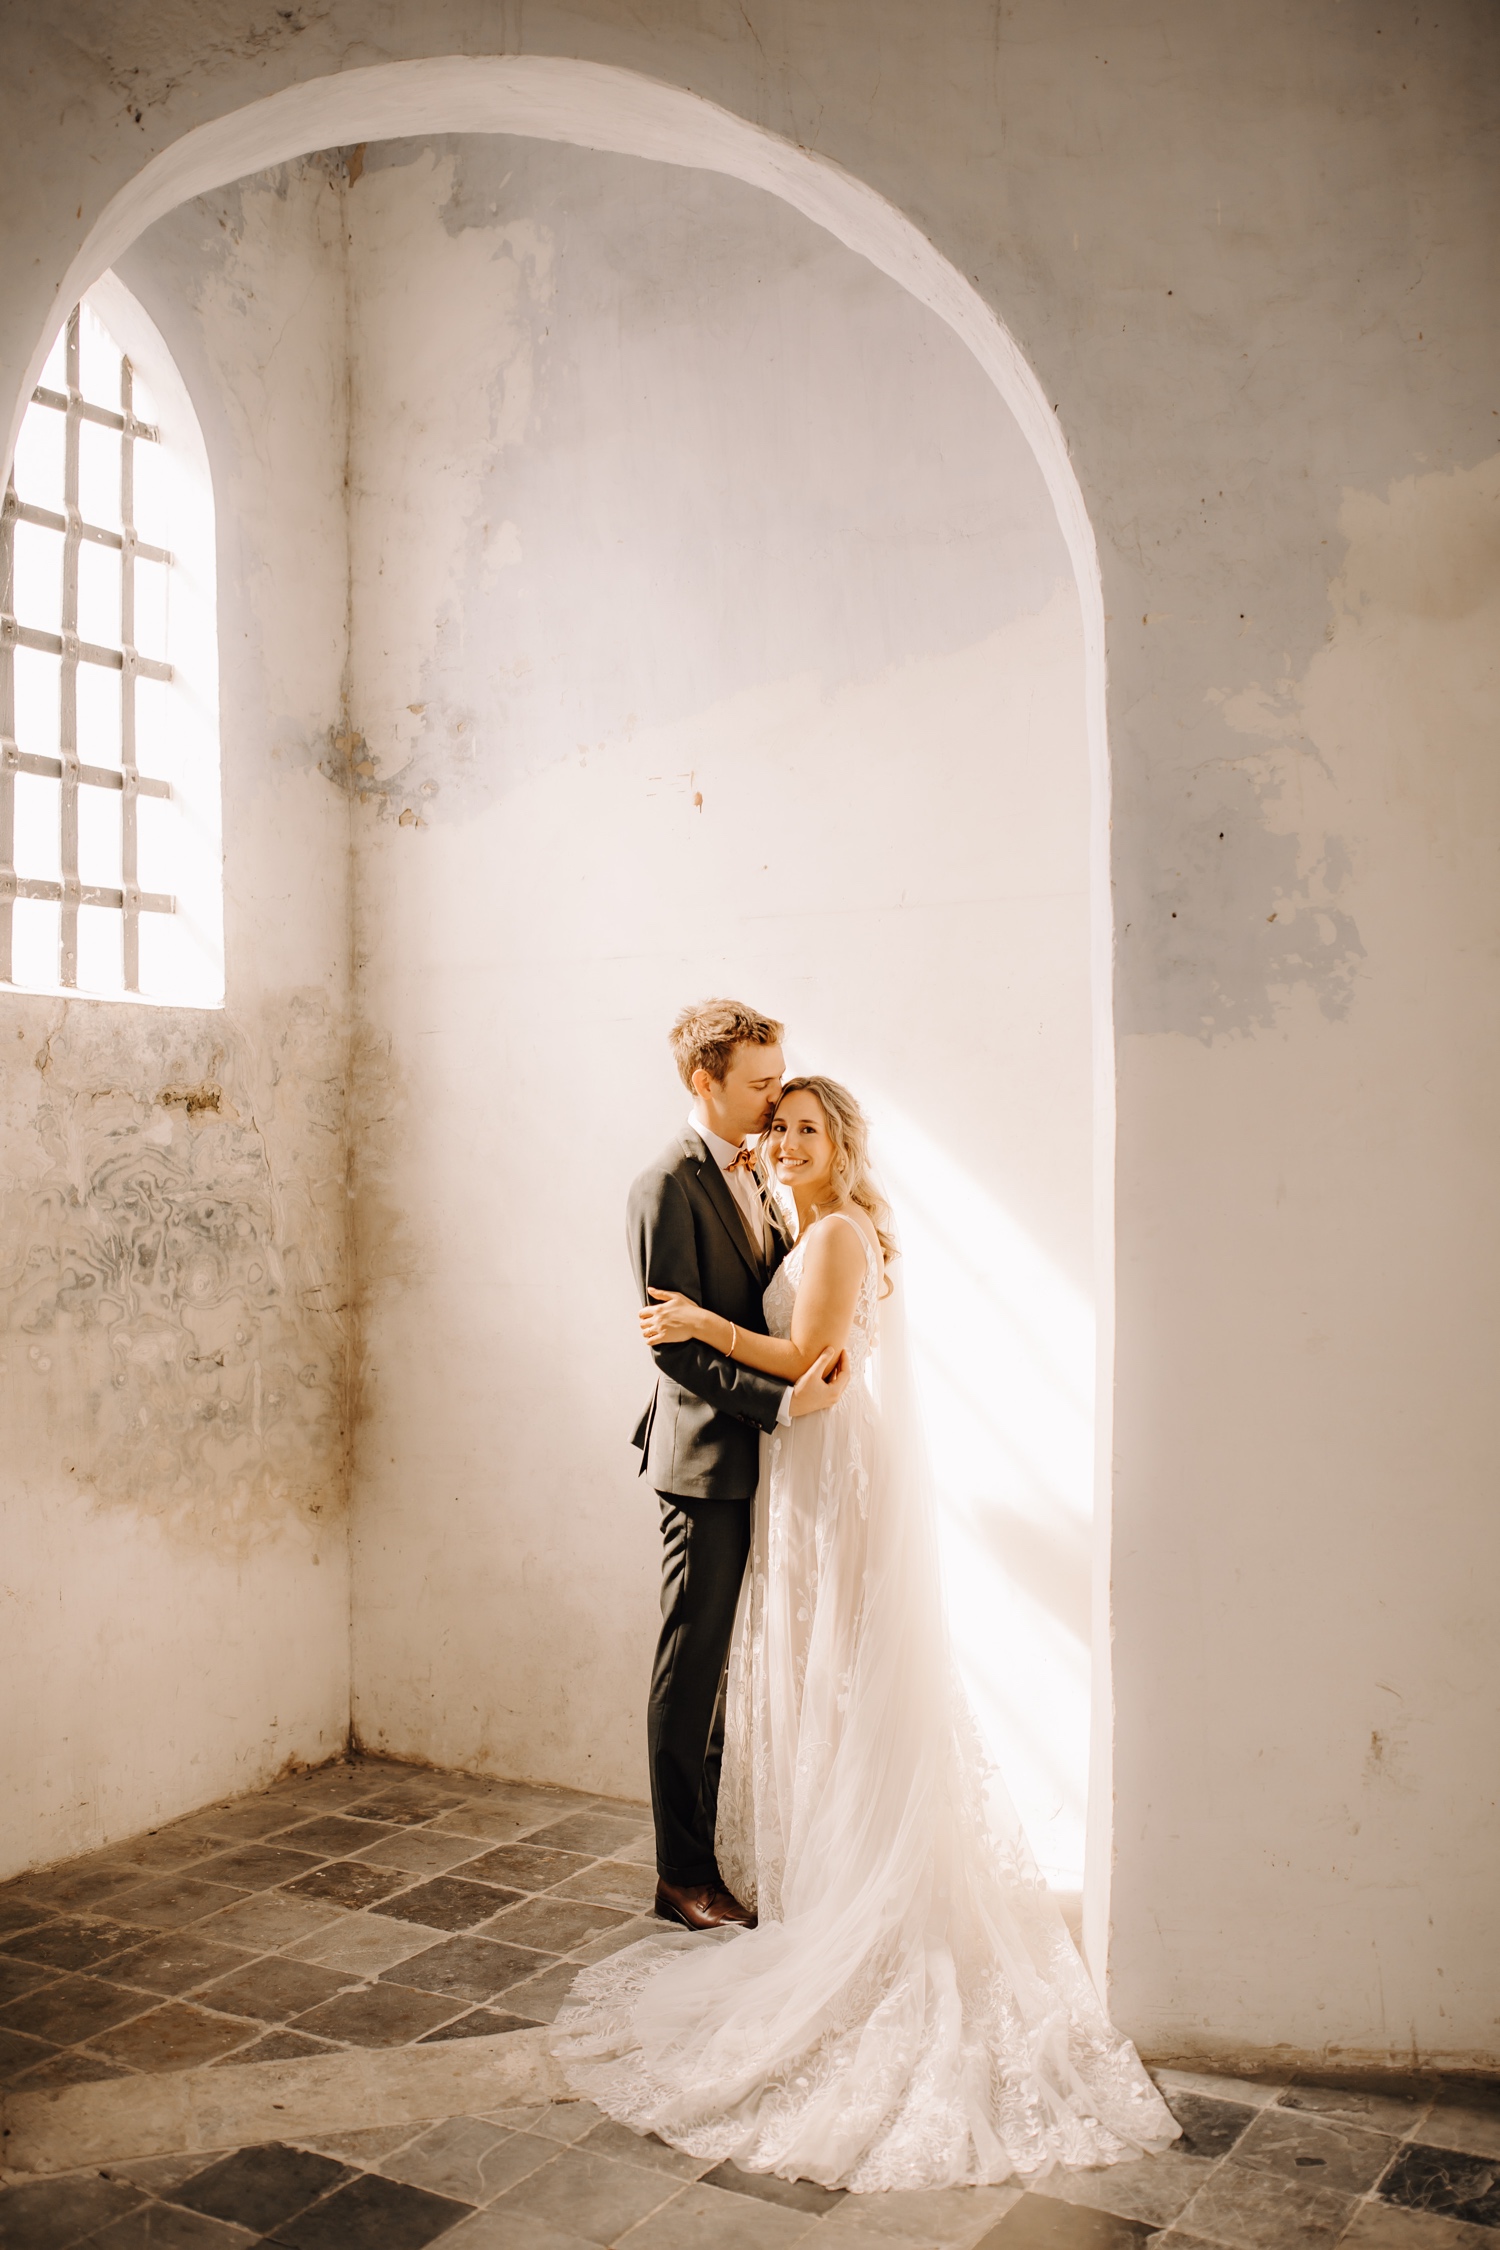 Huwelijksfotograaf Limburg - bruidspaar poseert in kapel te Herkenrode Hasselt